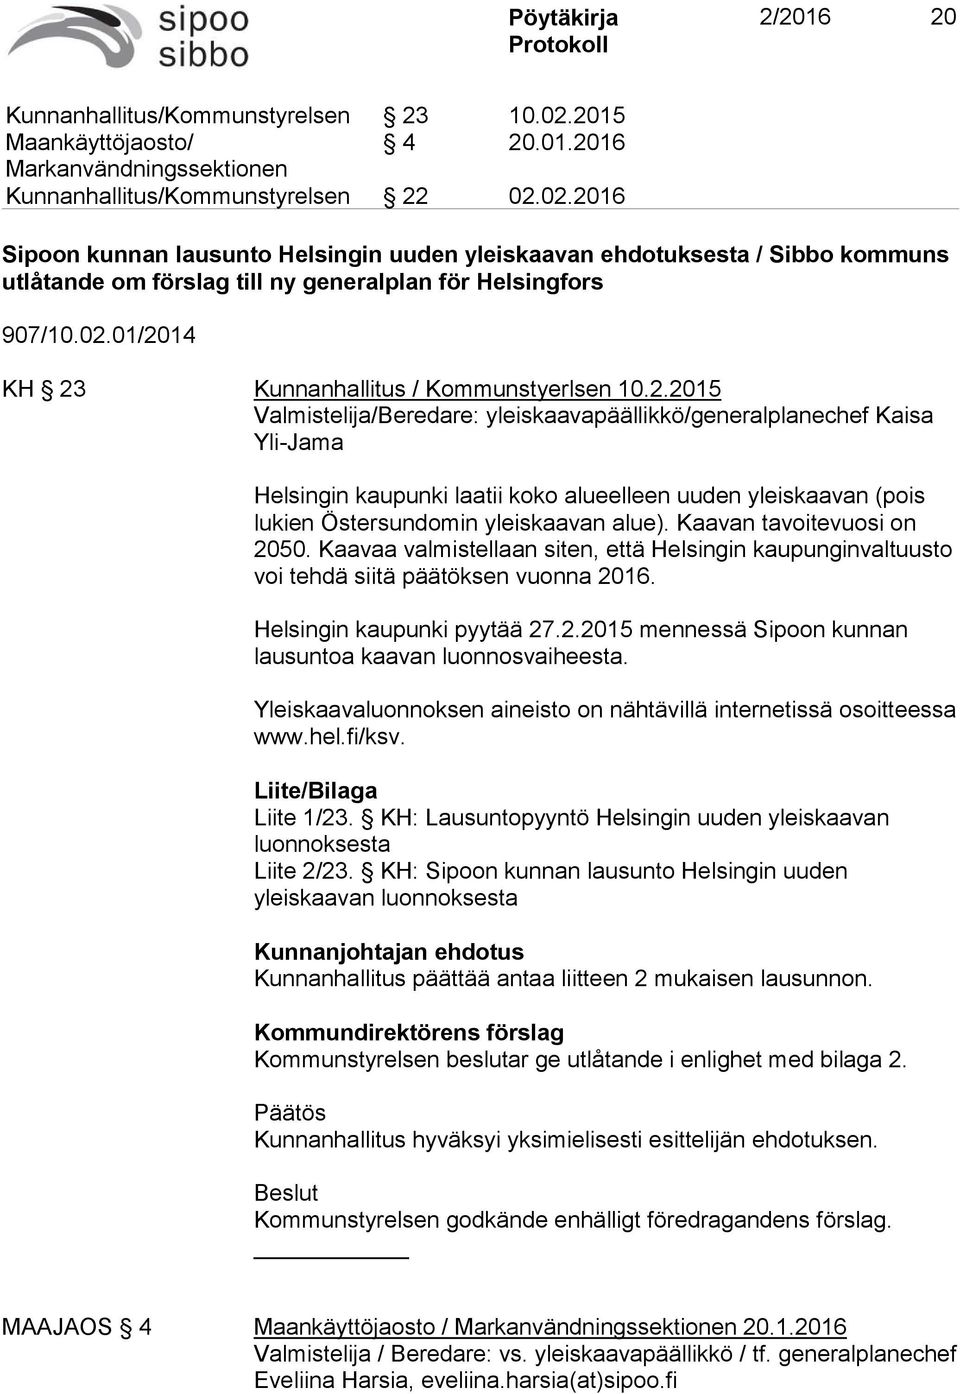 Kaavan tavoitevuosi on 2050. Kaavaa valmistellaan siten, että Helsingin kaupunginvaltuusto voi tehdä siitä päätöksen vuonna 2016. Helsingin kaupunki pyytää 27.2.2015 mennessä Sipoon kunnan lausuntoa kaavan luonnosvaiheesta.